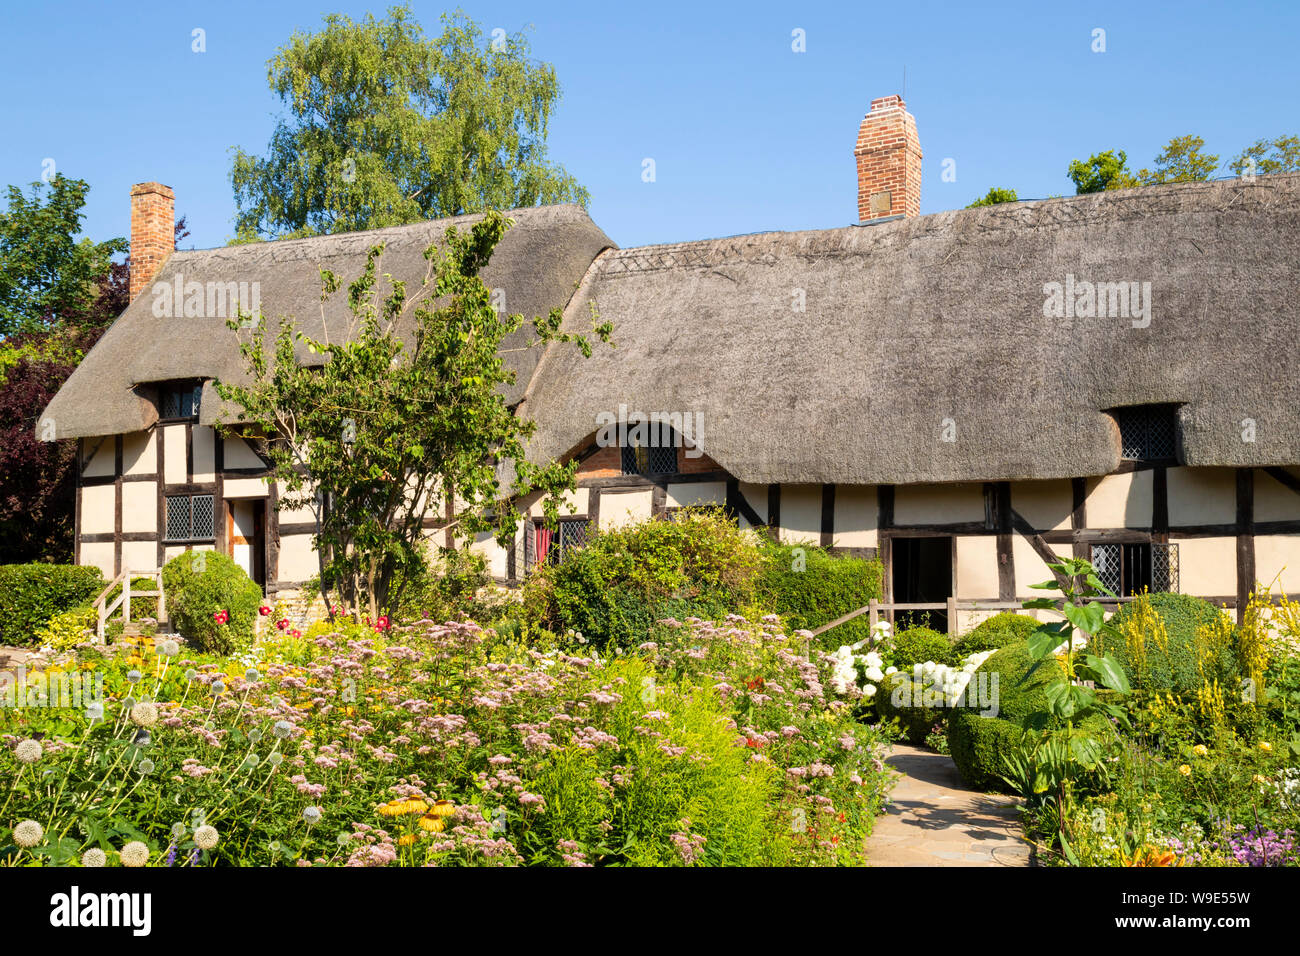 Anne Hathaway Cottage ist ein strohgedecktes Cottage in einem englischen Cottage Garten Shottery nahe Stratford upon Avon Warwickshire England GB Europa Stockfoto